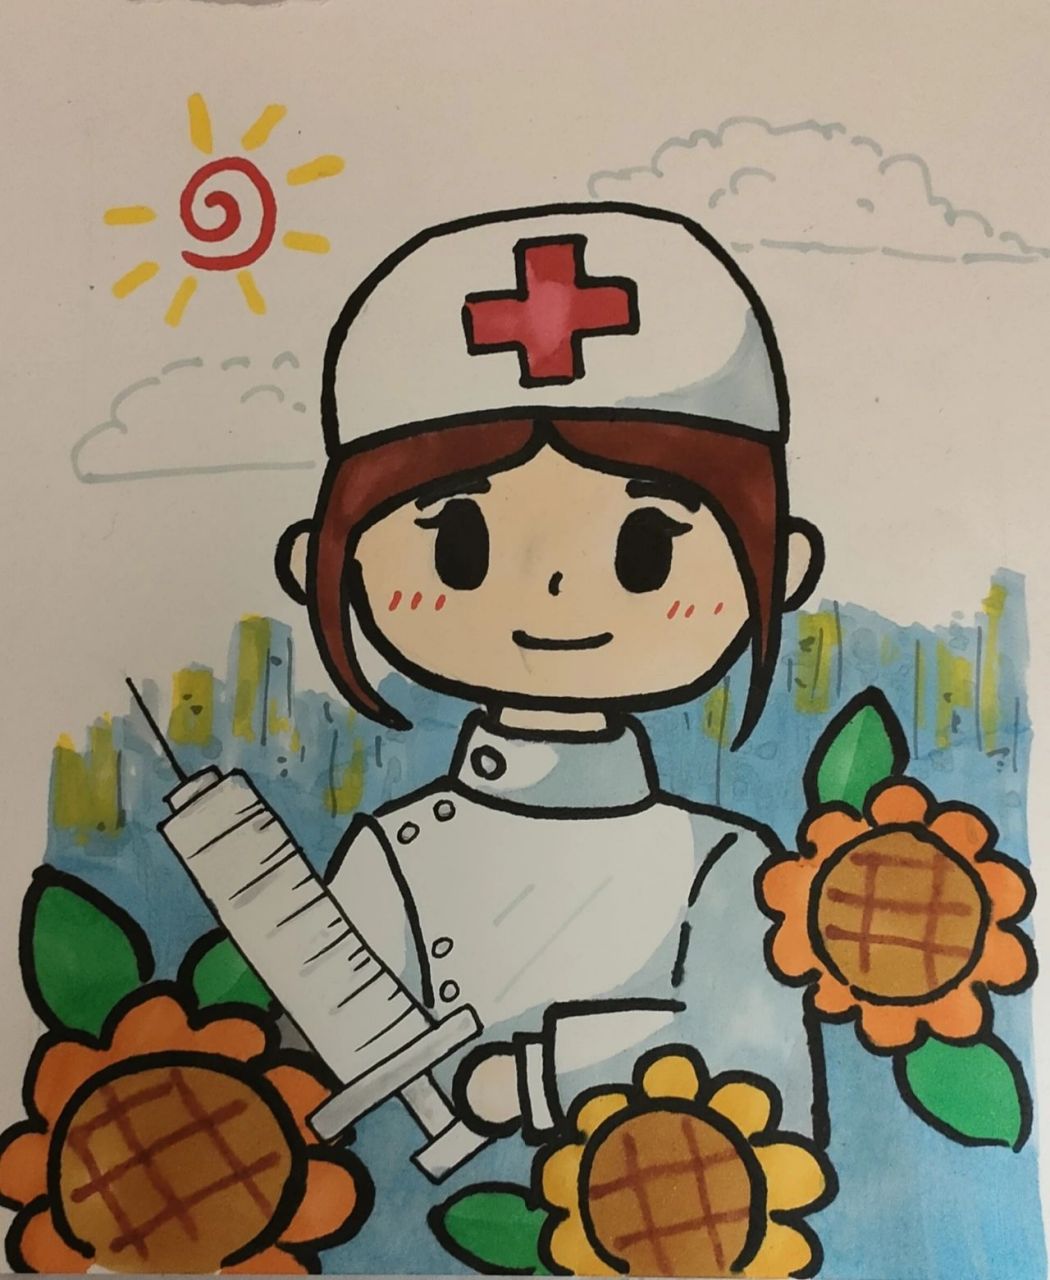 可爱简笔画卡通护士图片